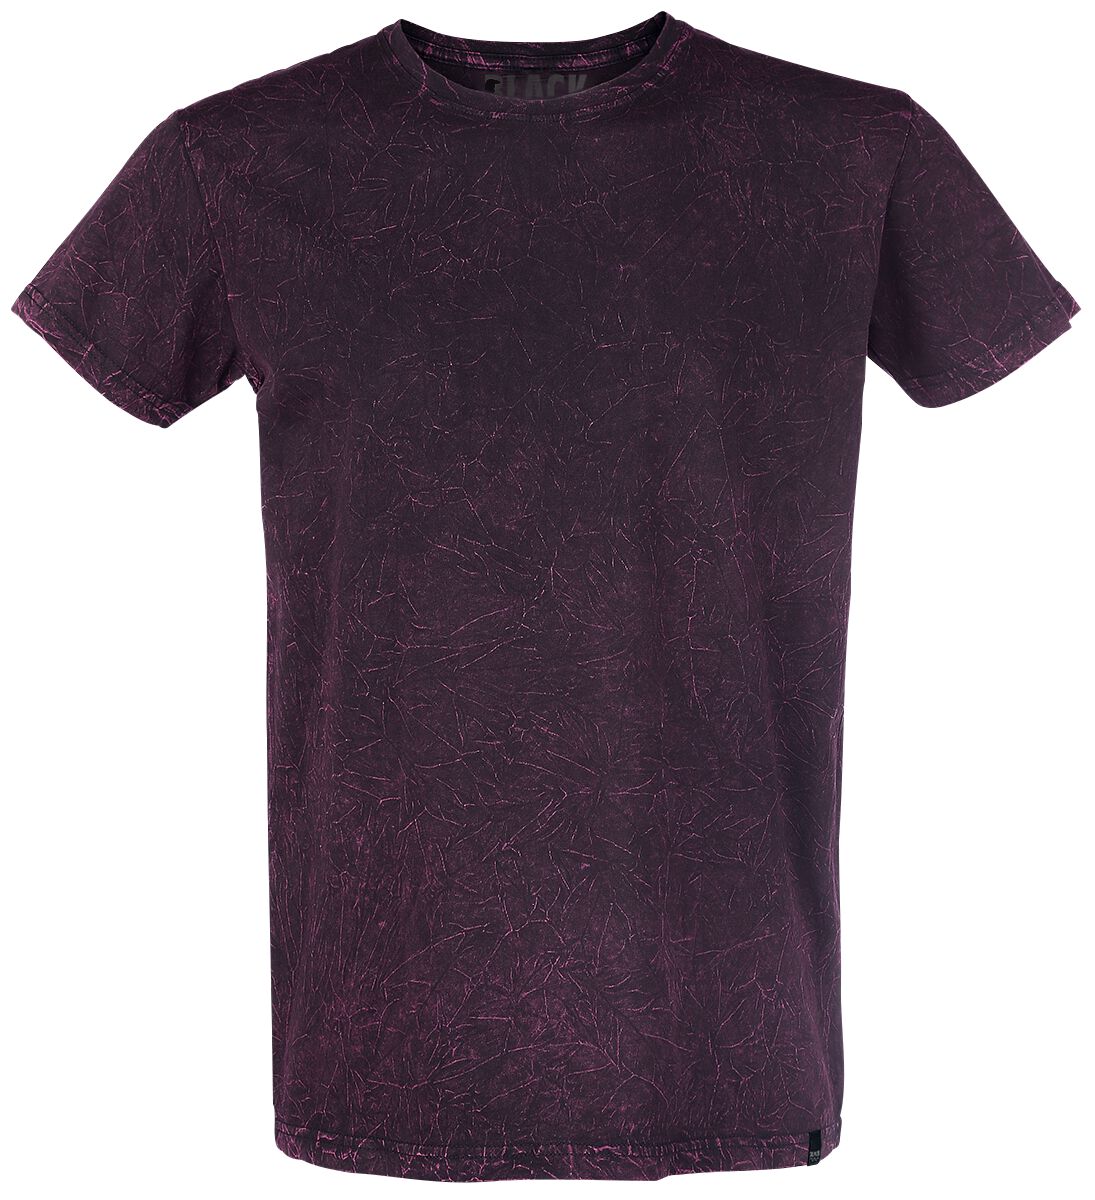 Black Premium by EMP T-Shirt - Rebel Soul - S bis 5XL - für Männer - Größe 5XL - dunkelrot